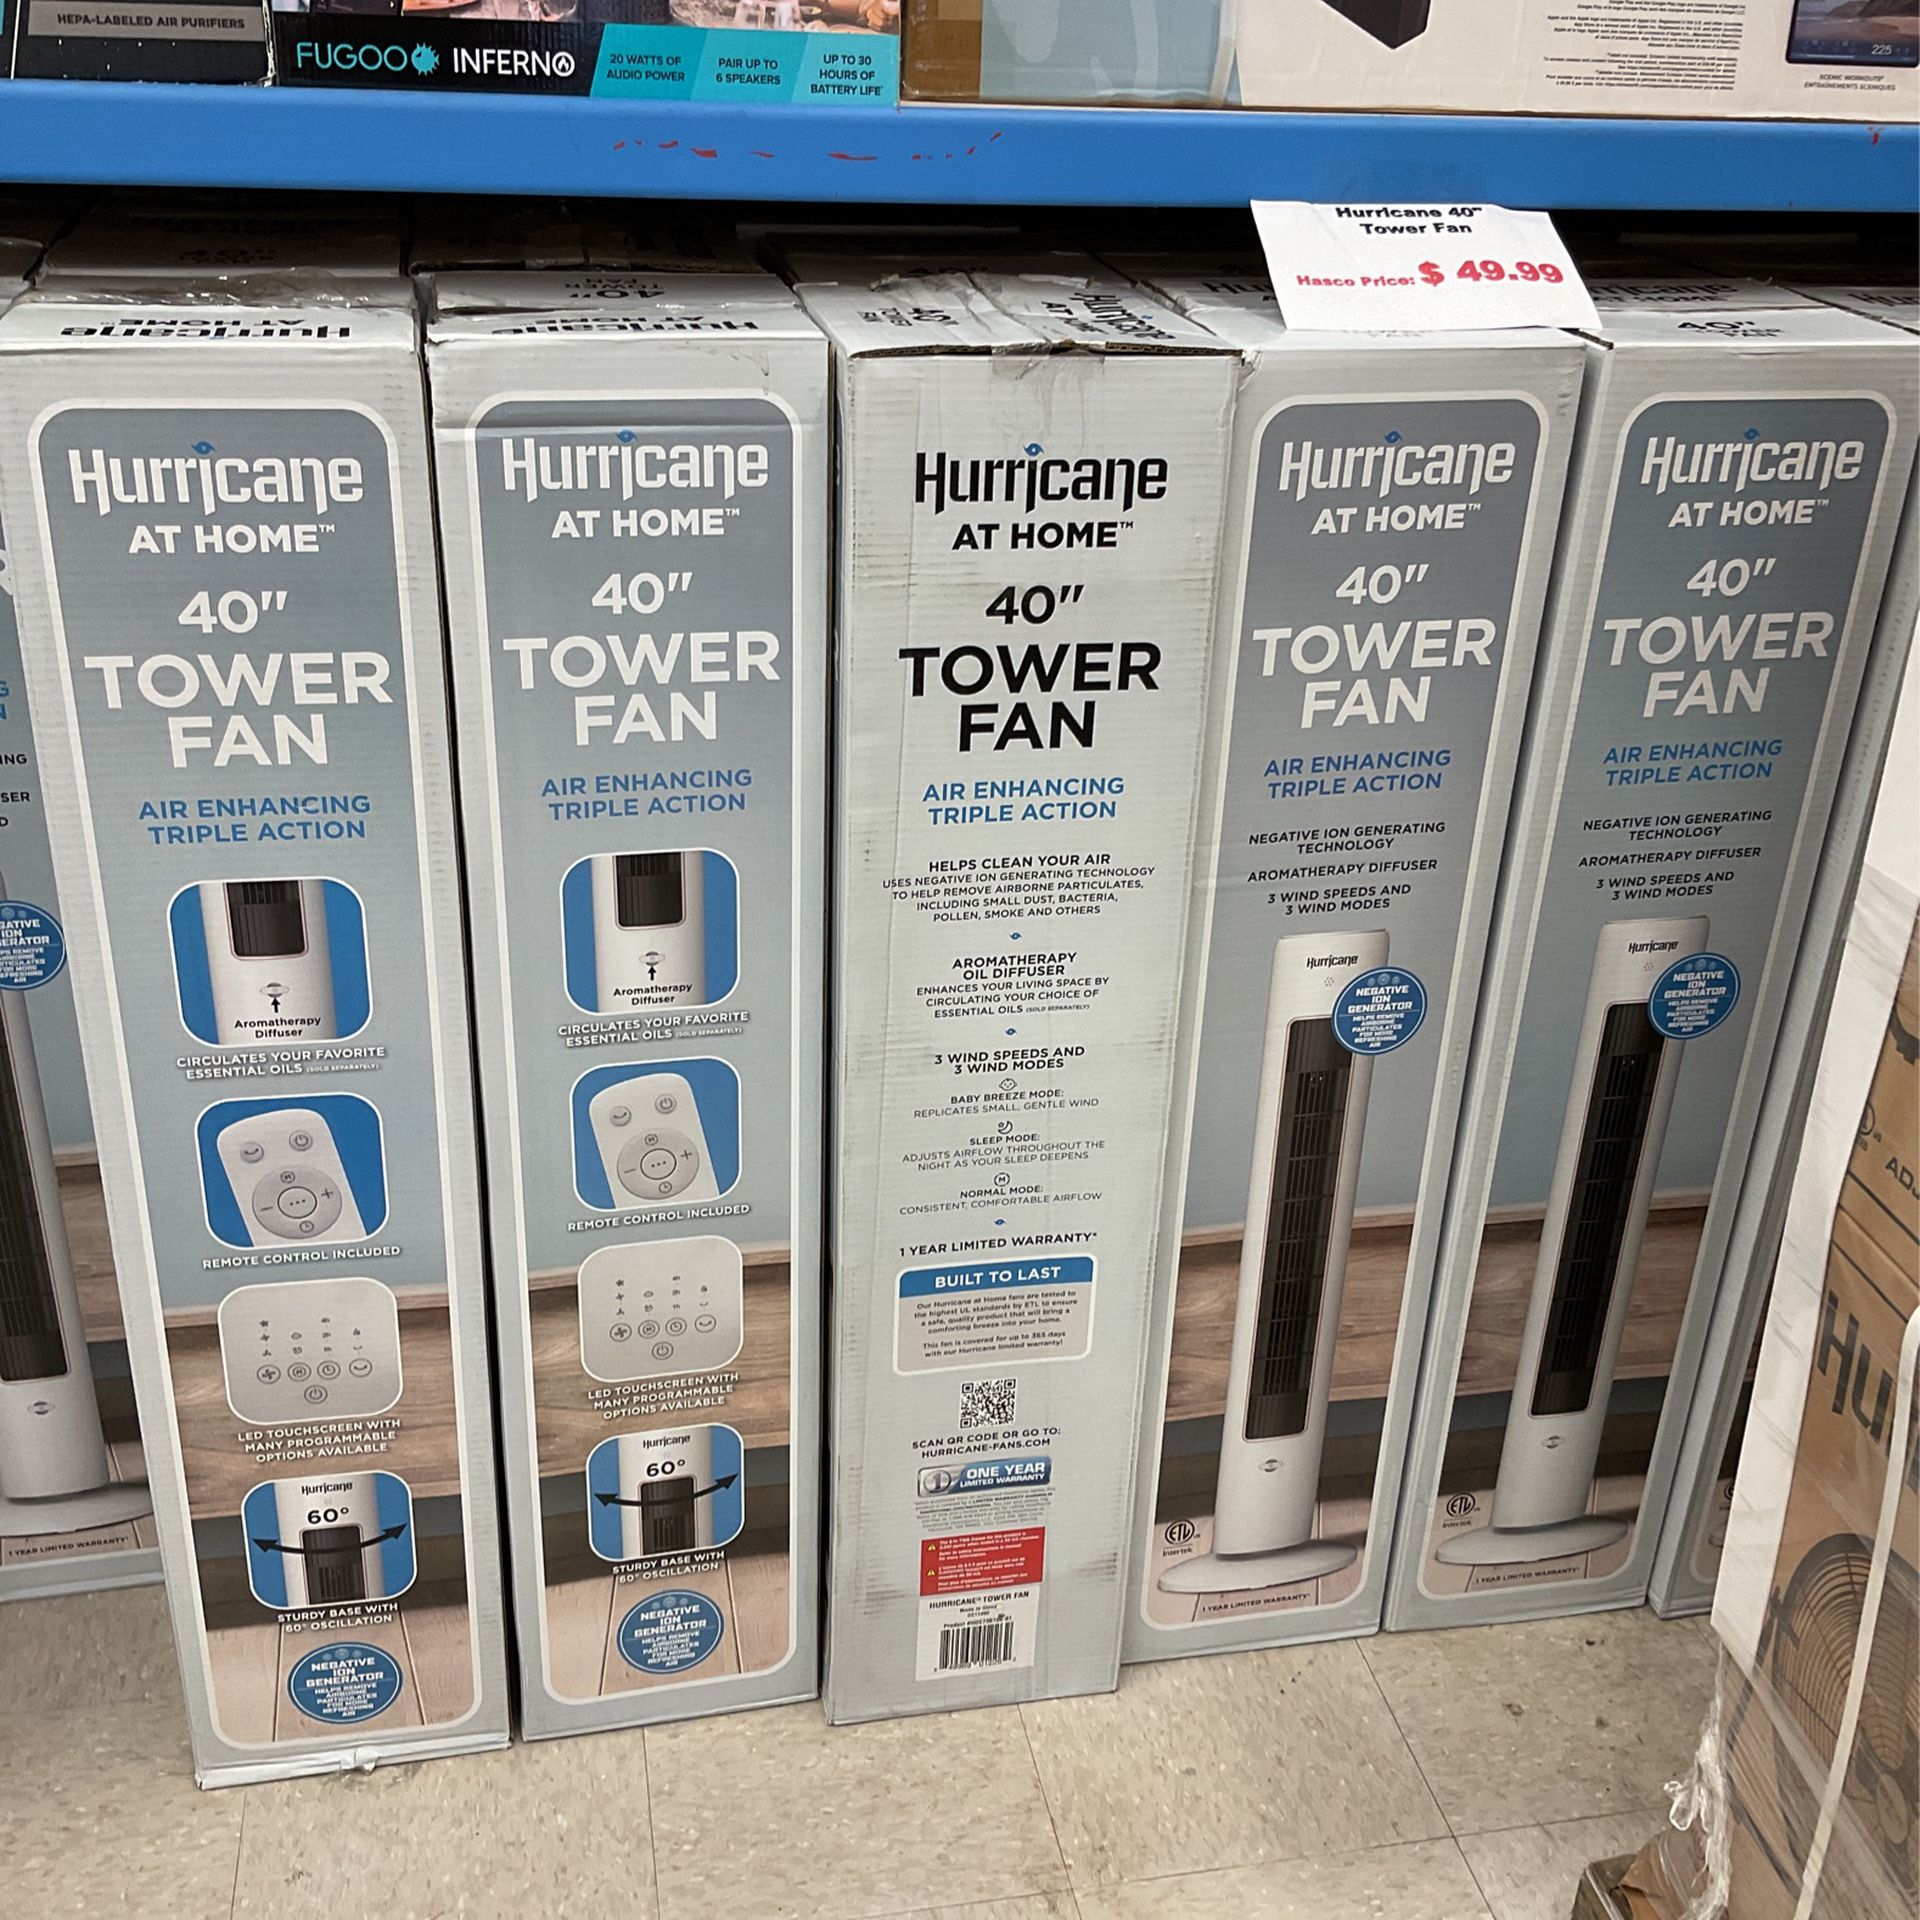 Hurricane 40” Tower Fan